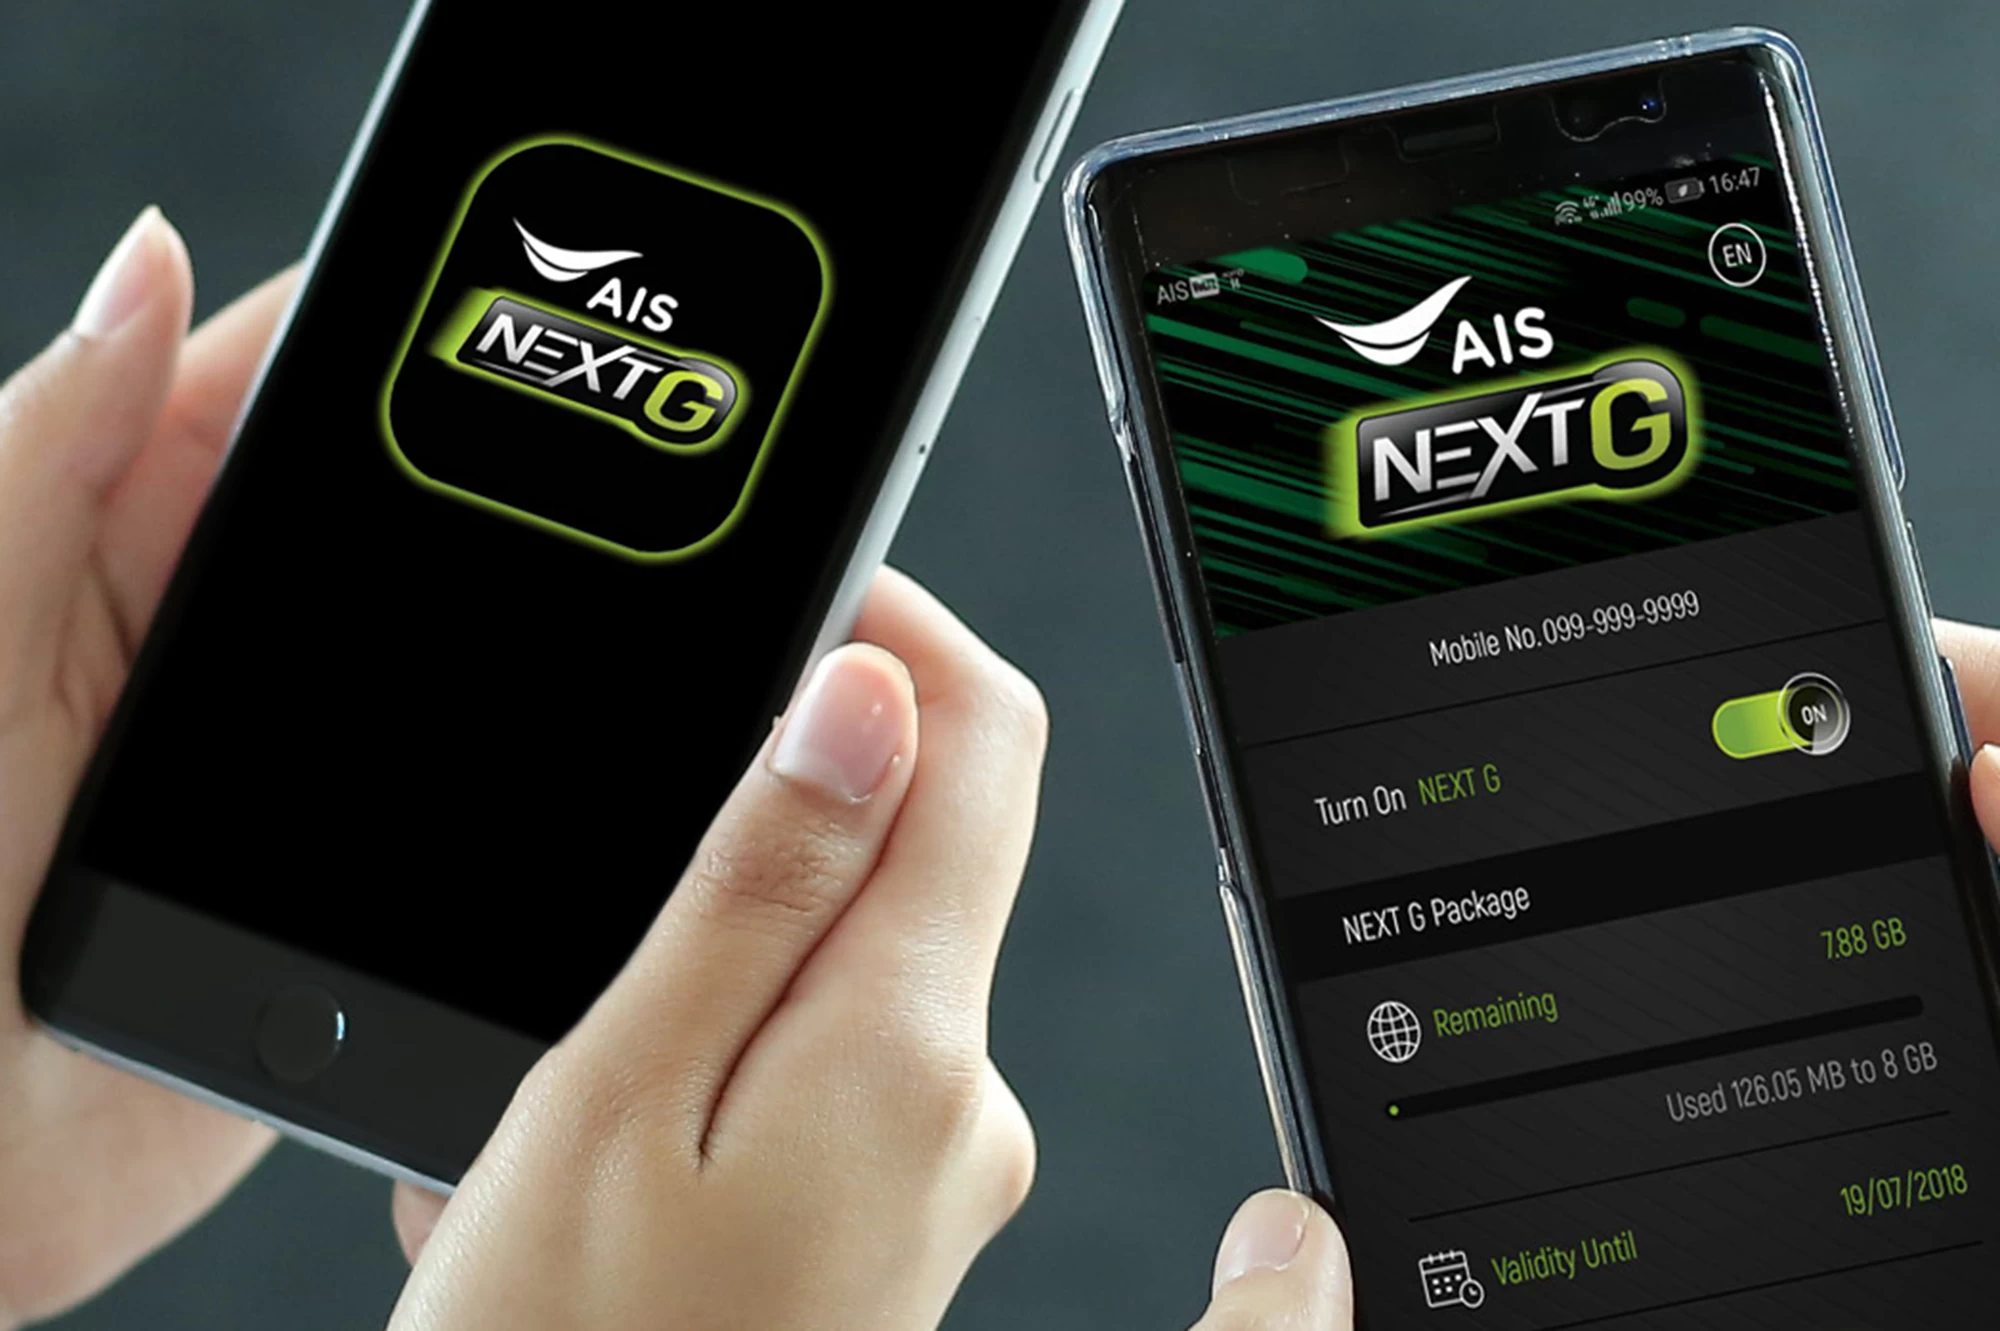 AIS NEXT G Available on iOS | AIS | ชาว iOS โหลดกันให้ระเบิด! AIS ประกาศเปิดให้บริการ NEXT G บนเครื่อง iPhone แล้ววันนี้